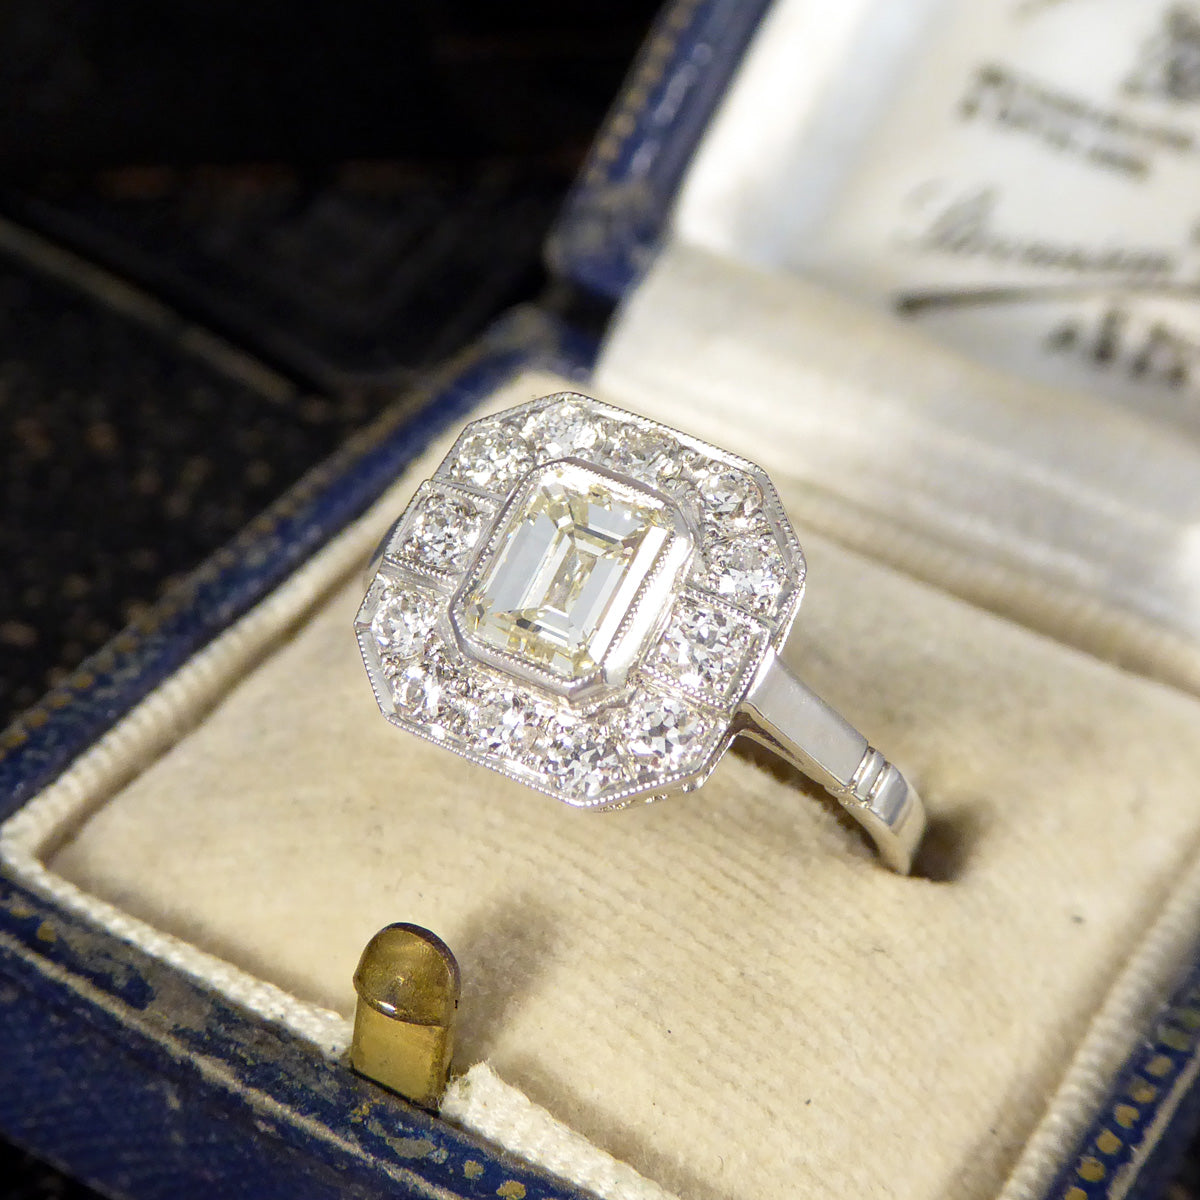 Art Deco Inspired Emerald Cut Diamond Cluster Ring in Platinum